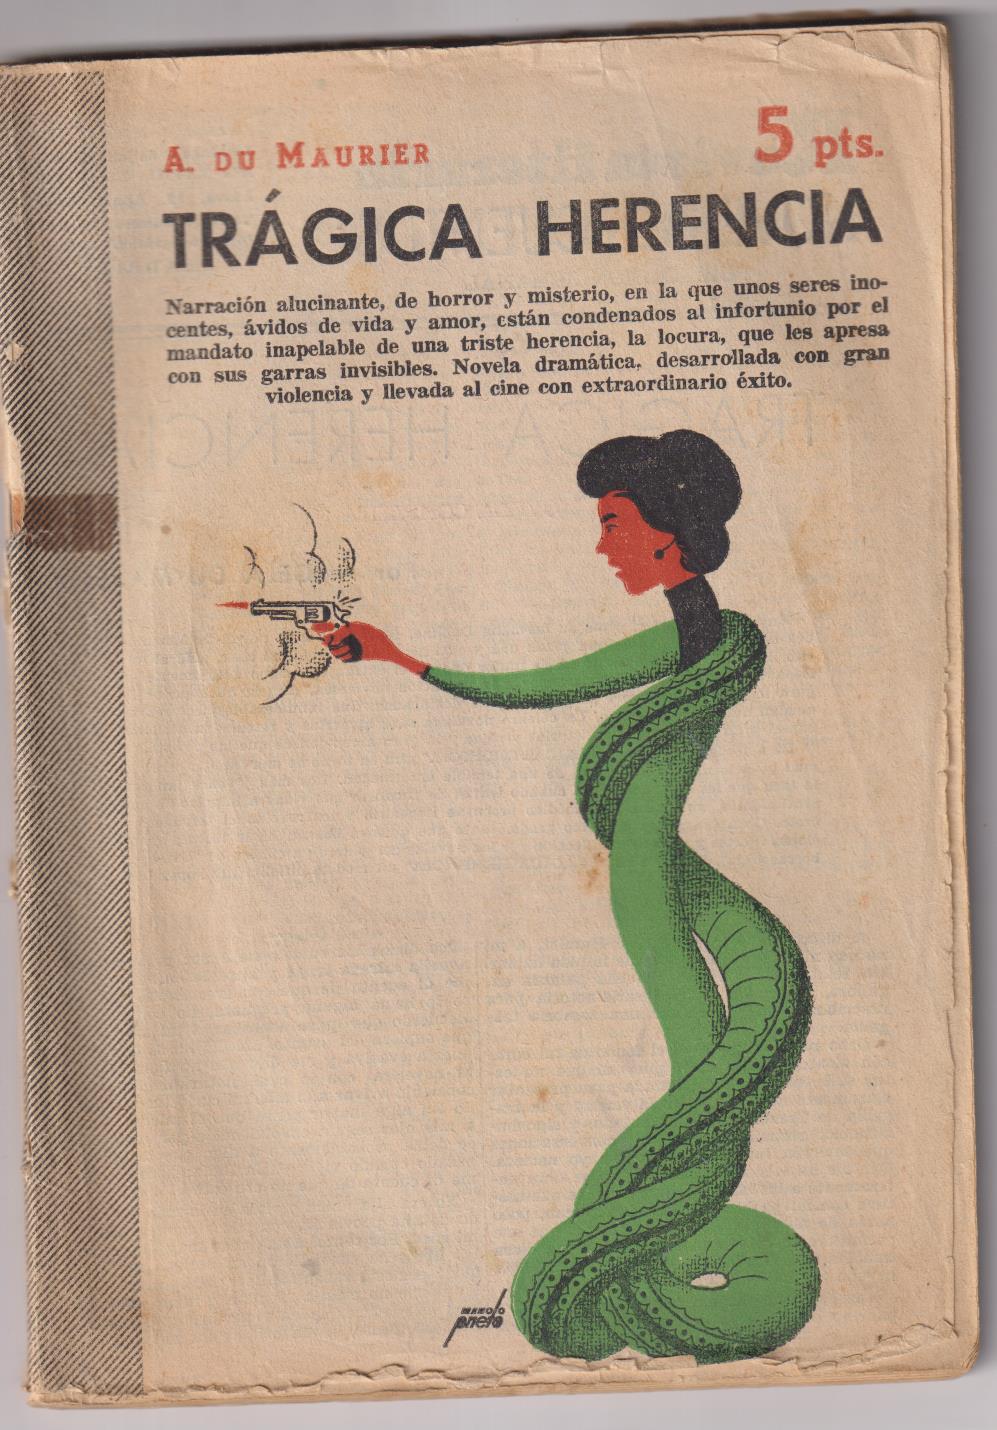 Revista Literaria Novelas y Cuentos nº 1312. A. Du Maurier. Trágica herencia, Año 1956